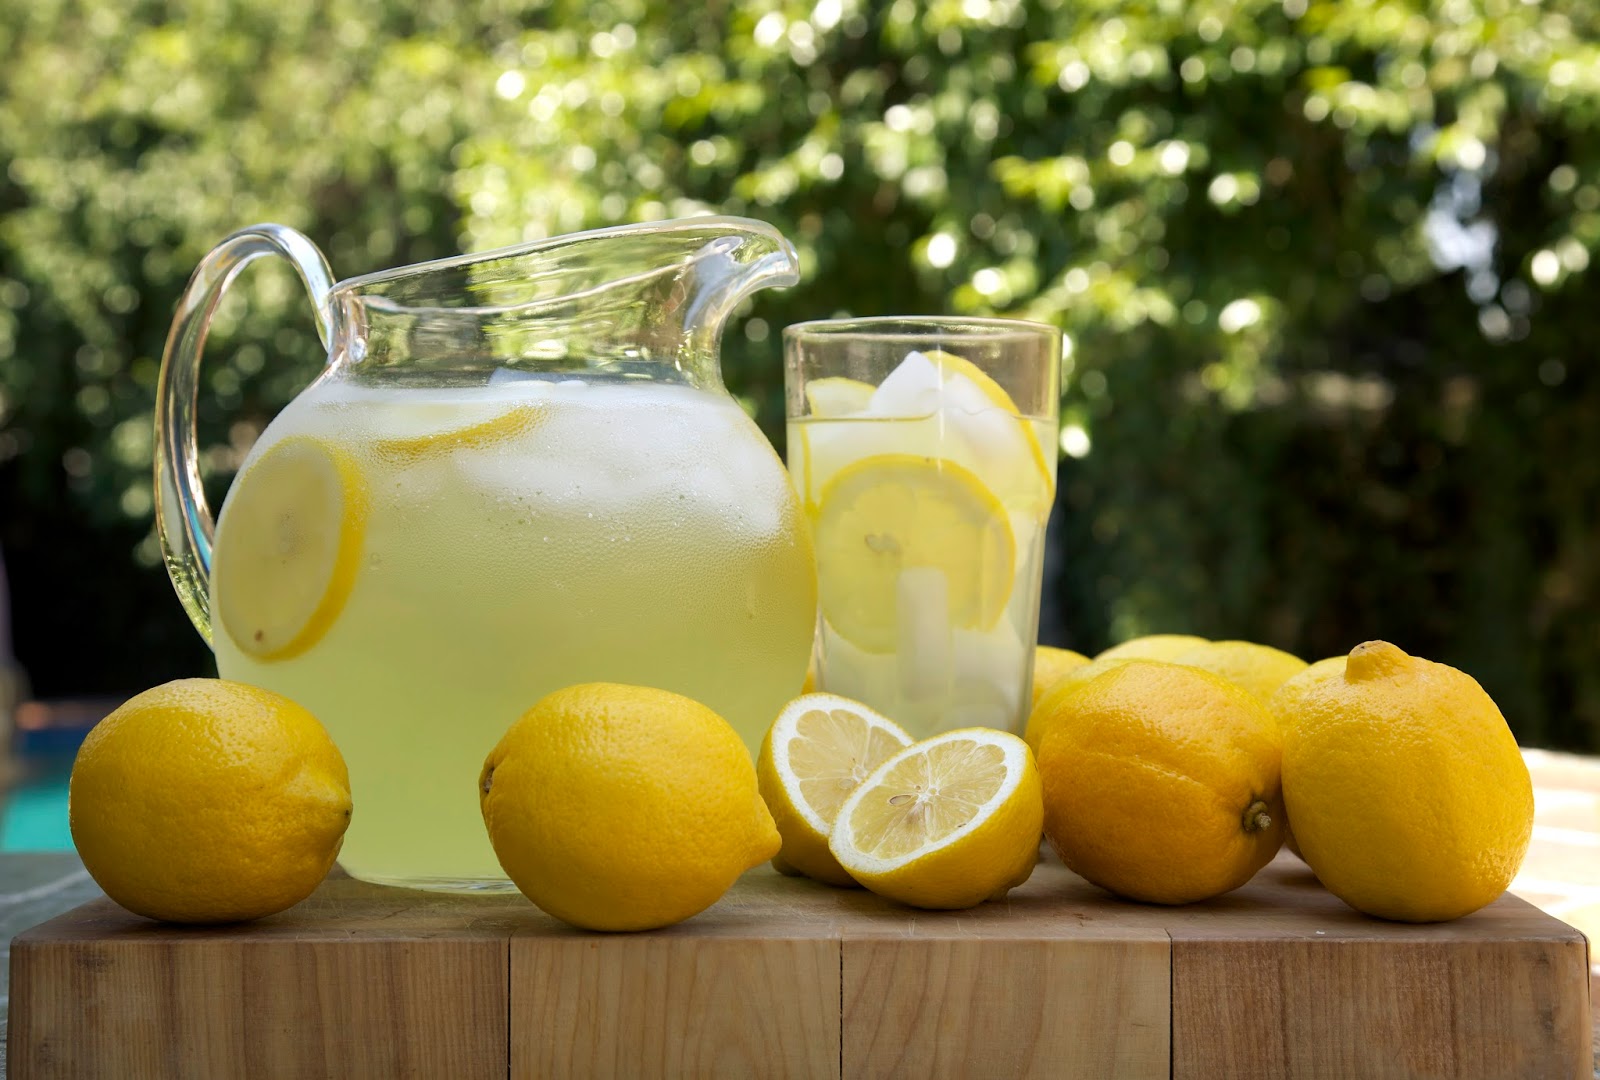 #inspire180days: Part 1: Make Lemonade